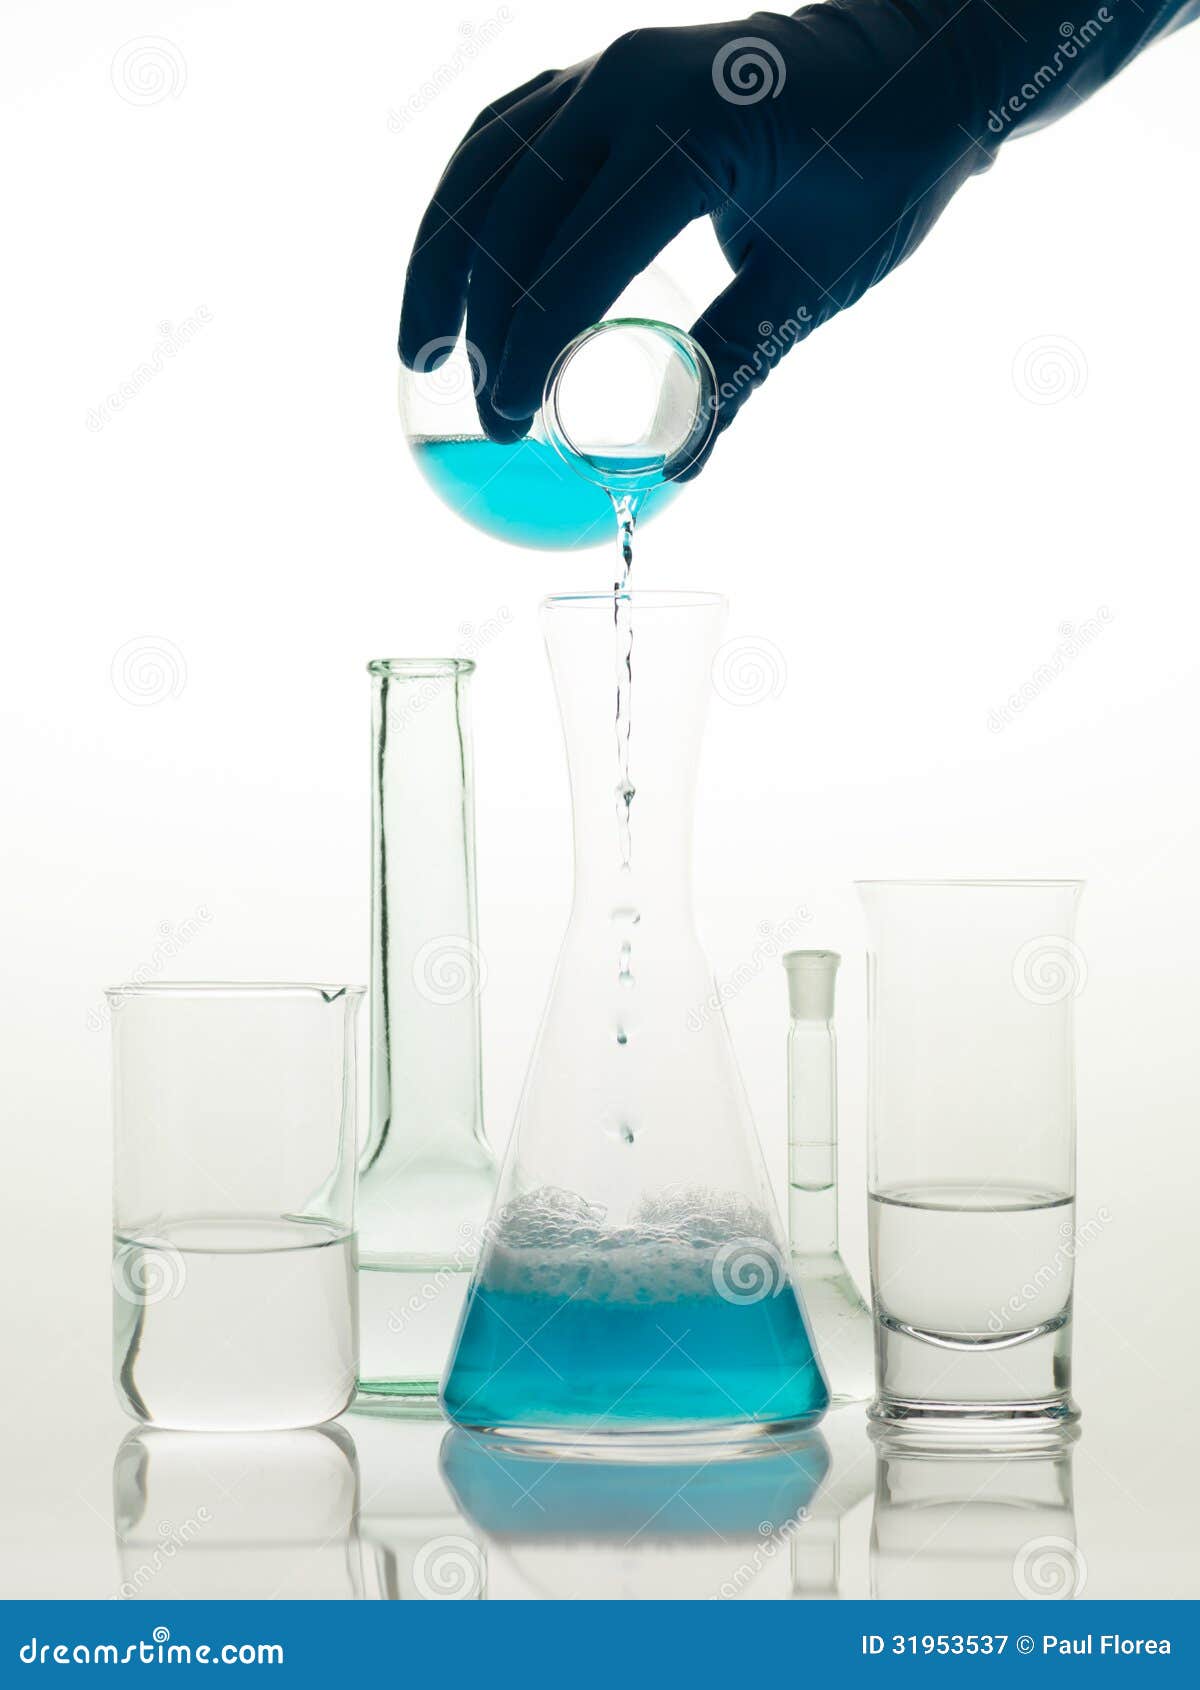 Het mengen van substanties in het laboratorium. Frontale mening van verschillende die types van glascontainers in het laboratorium worden gebruikt, met transparante kleurloze vloeistof en wordt gevuld waarin iemand een blauwe vloeistof giet